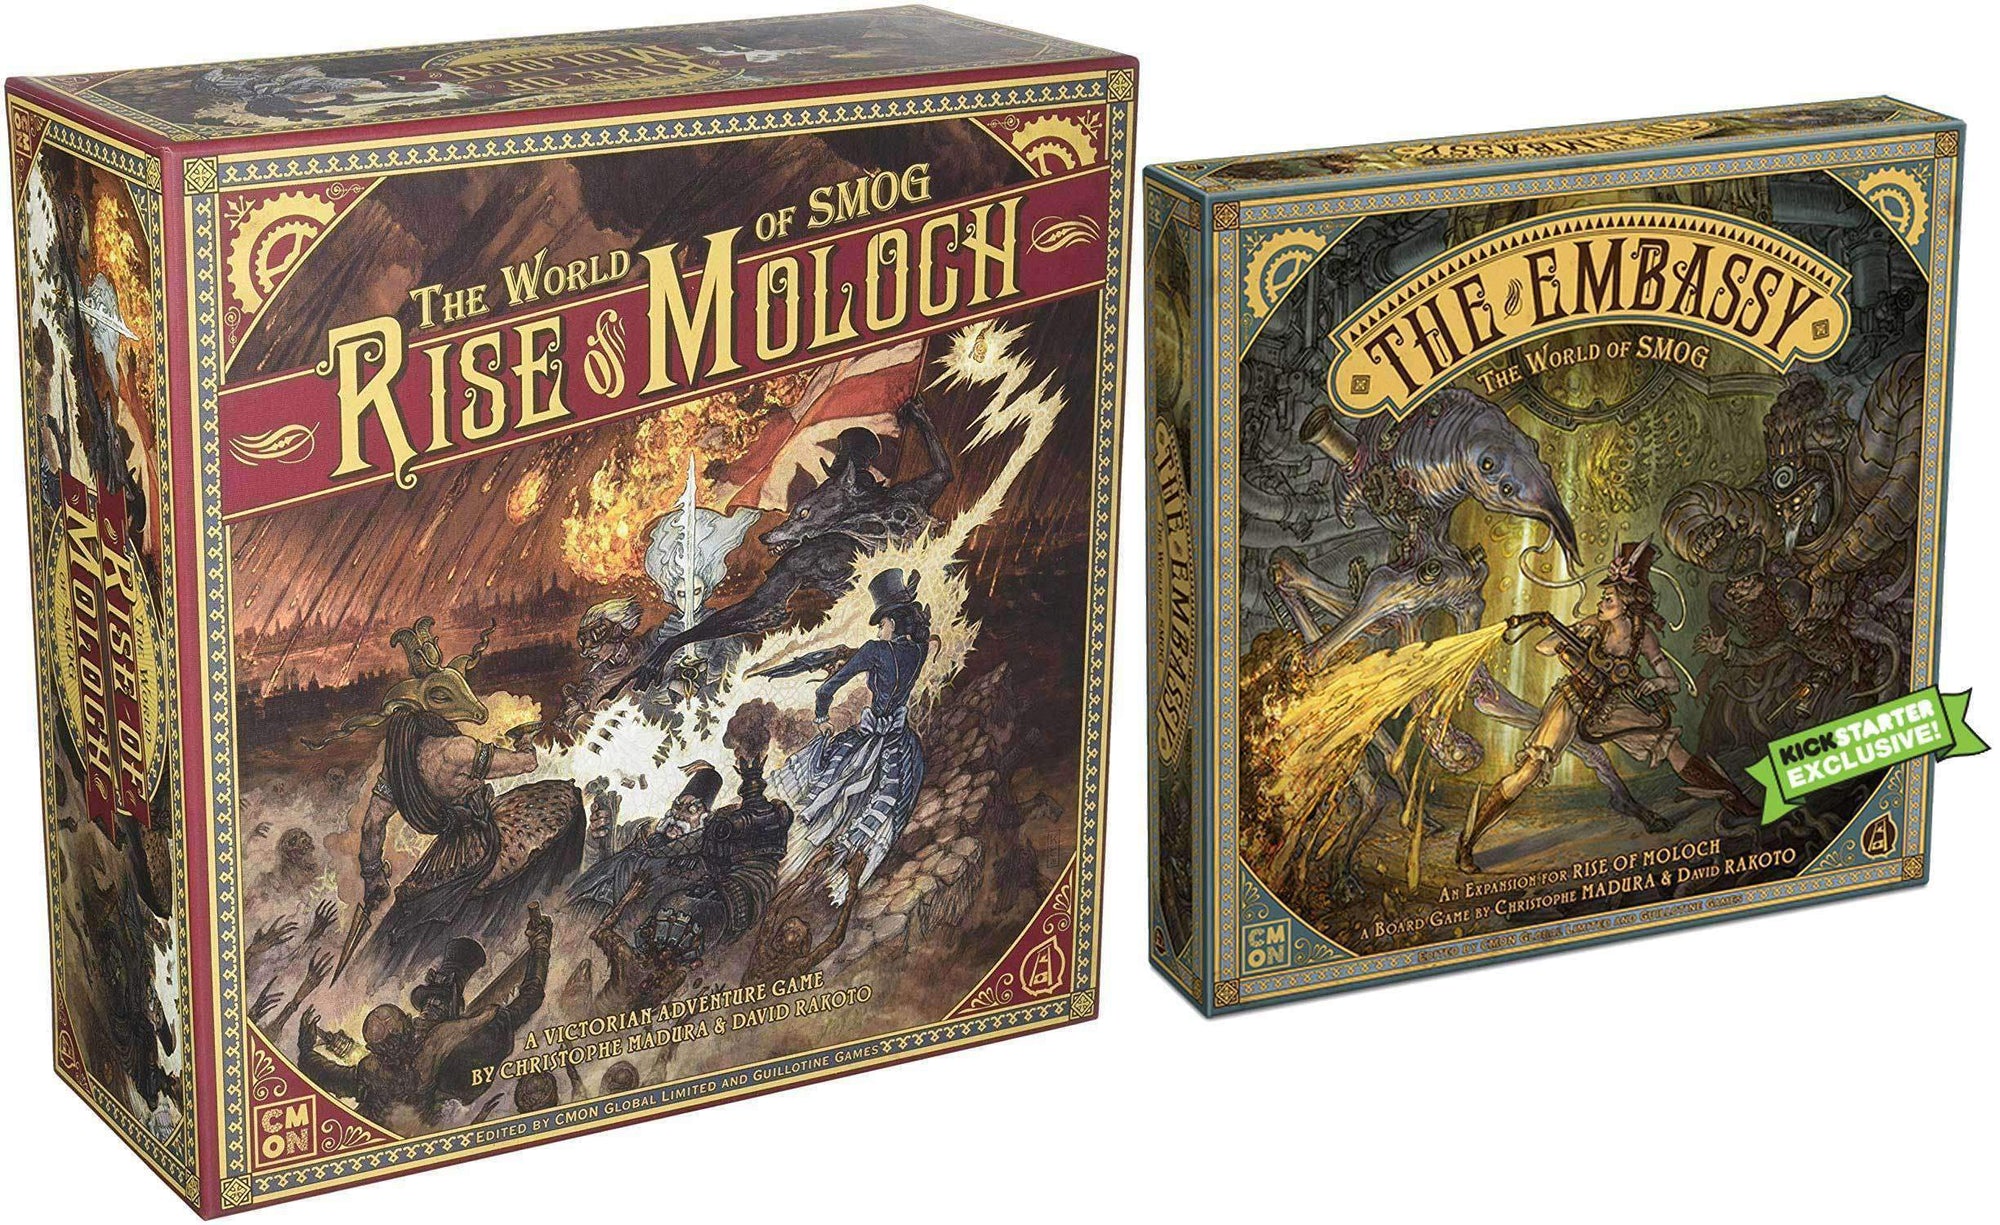 World of Smog: Rise of Moloch con el juego de mesa de expansión de la embajada (Kickstarter) CMON Limitado